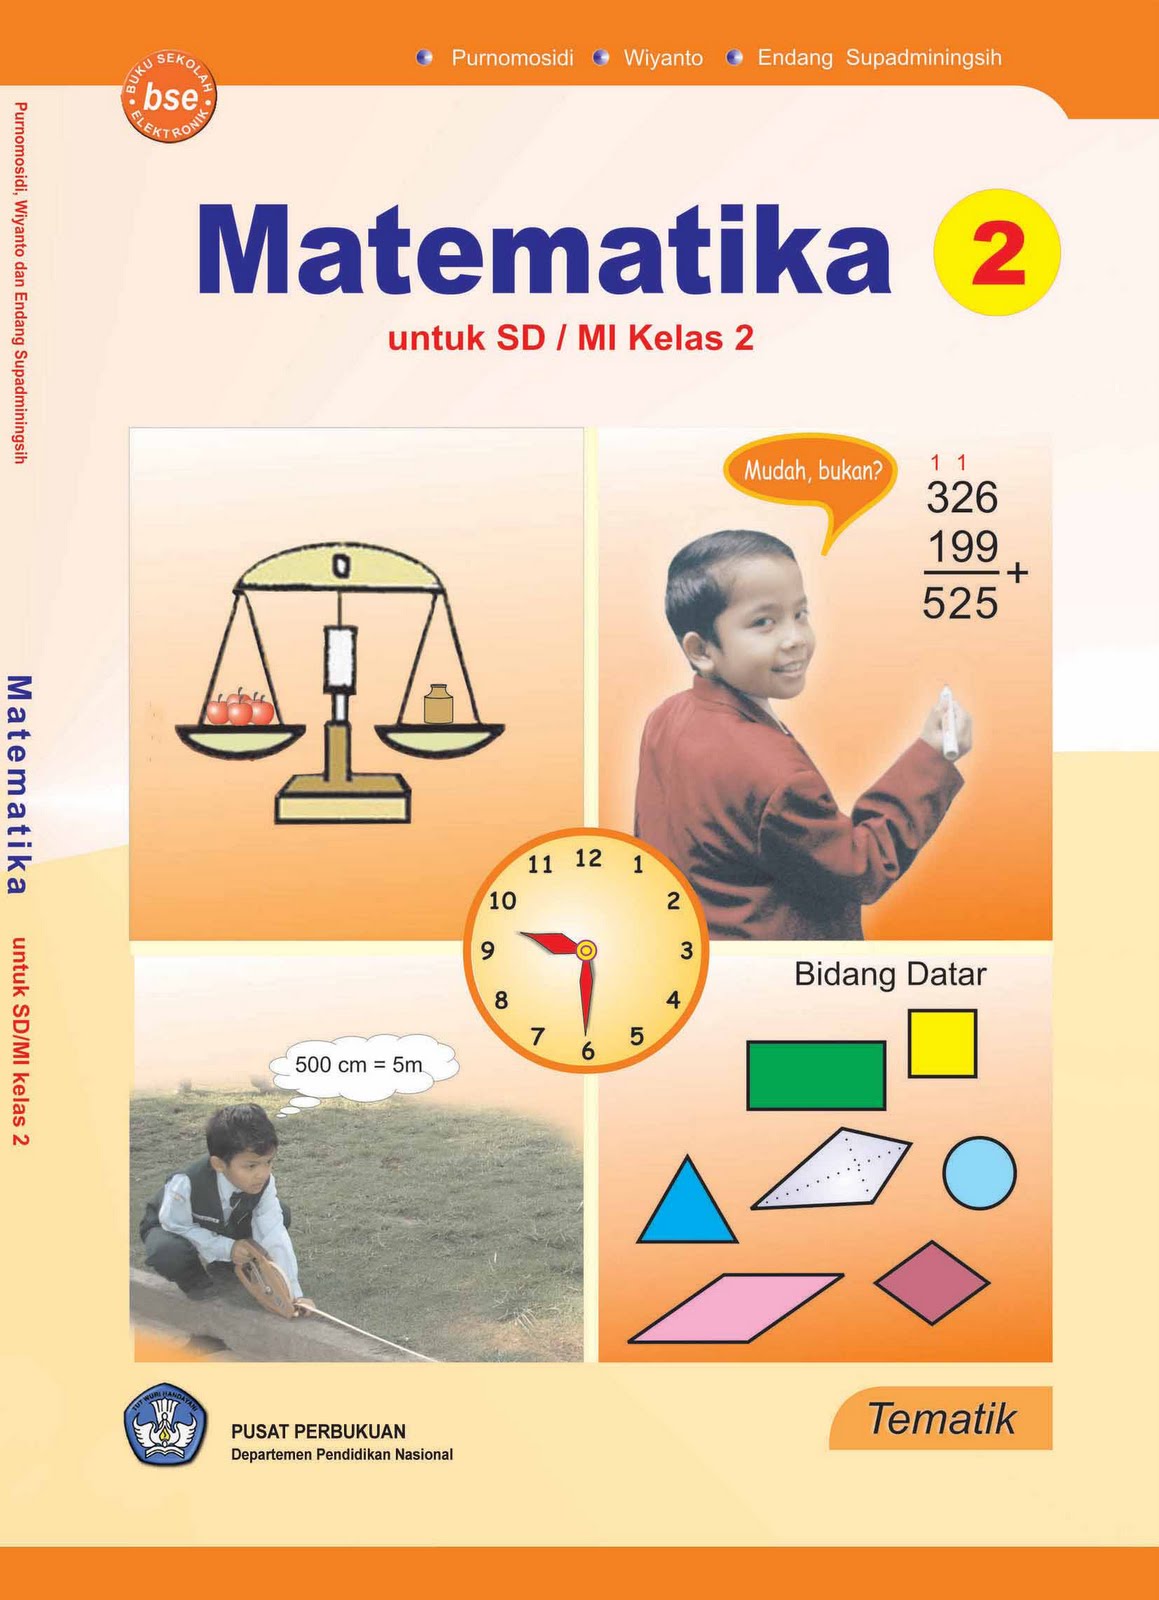 Belajar Matematika Untuk Sd Smp Dan Sma  Review Ebooks